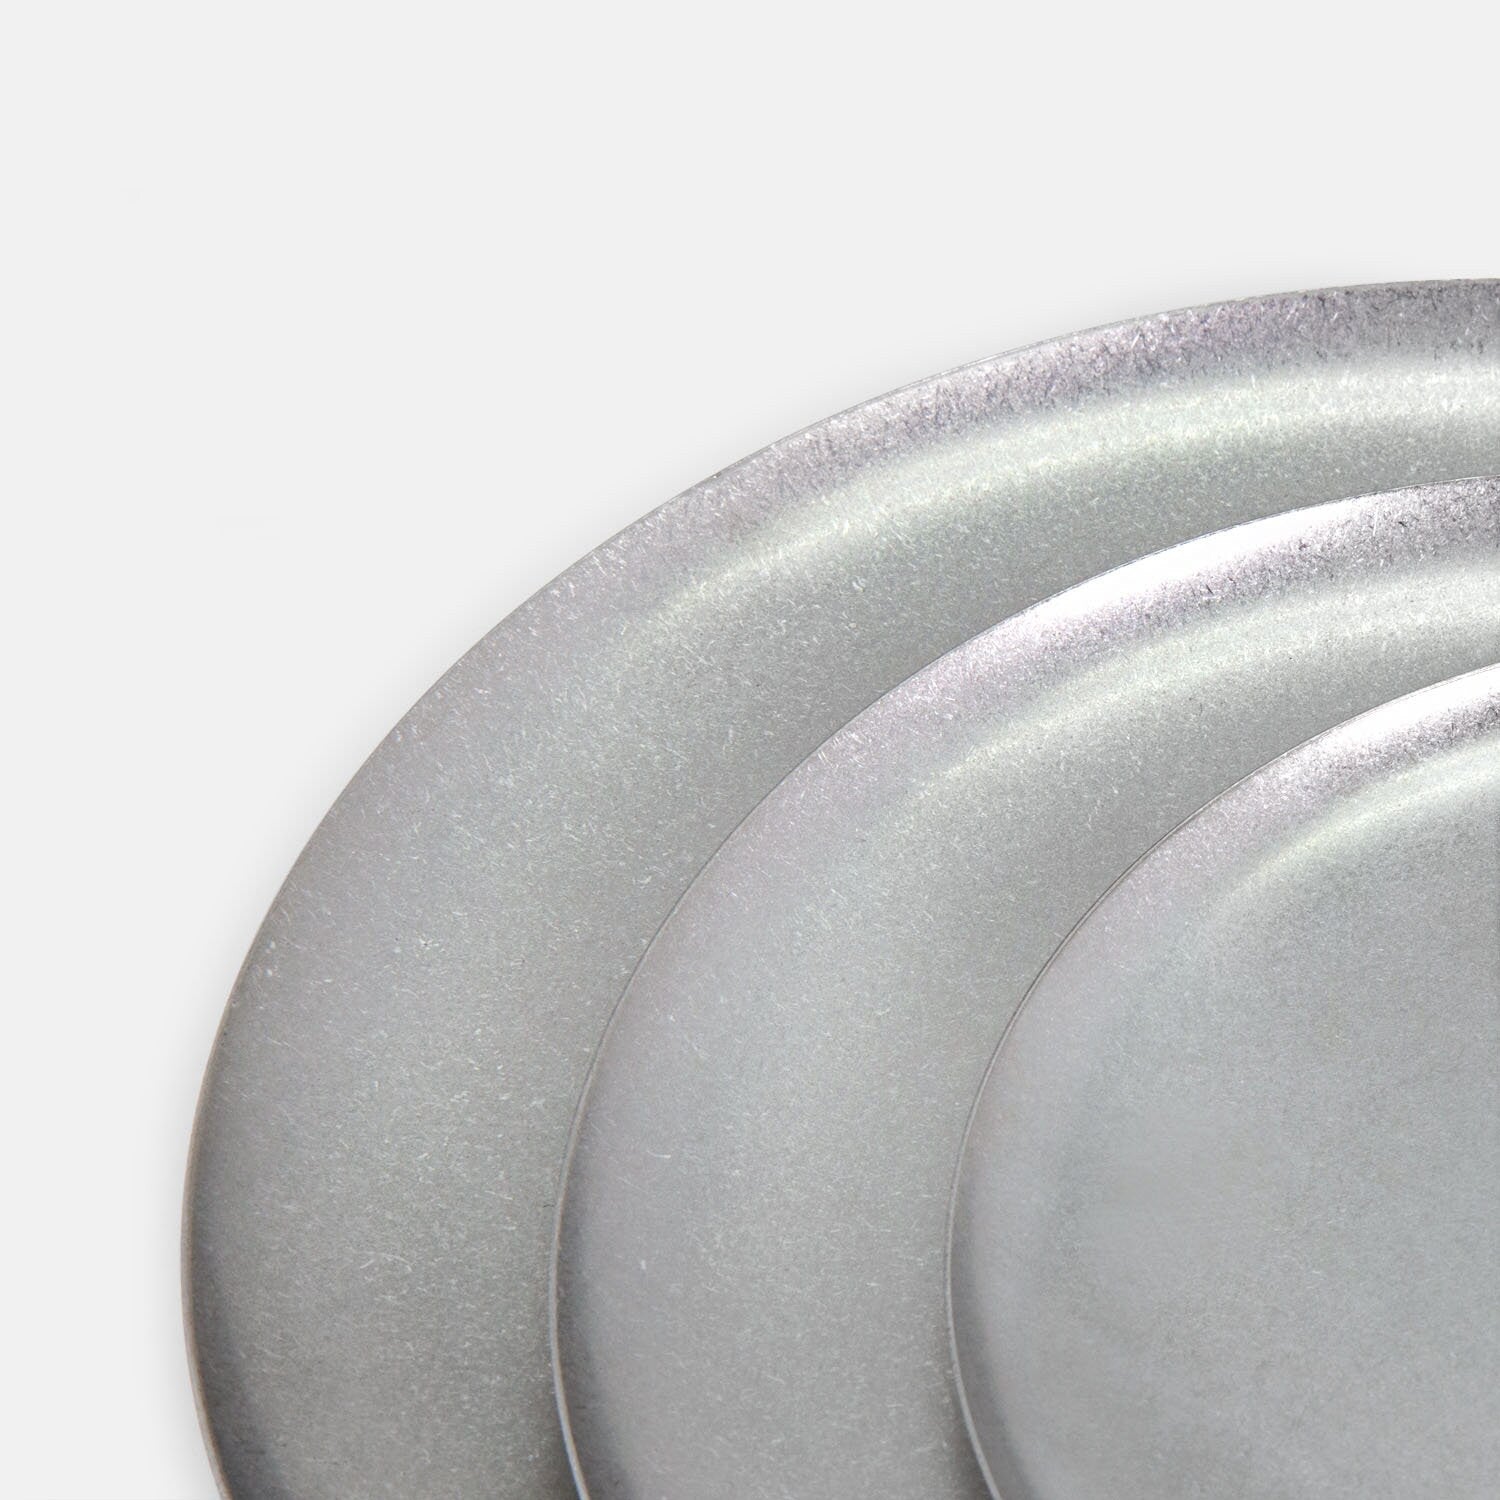 Round Stainless Steel Dinner Plate/ Kitchenware